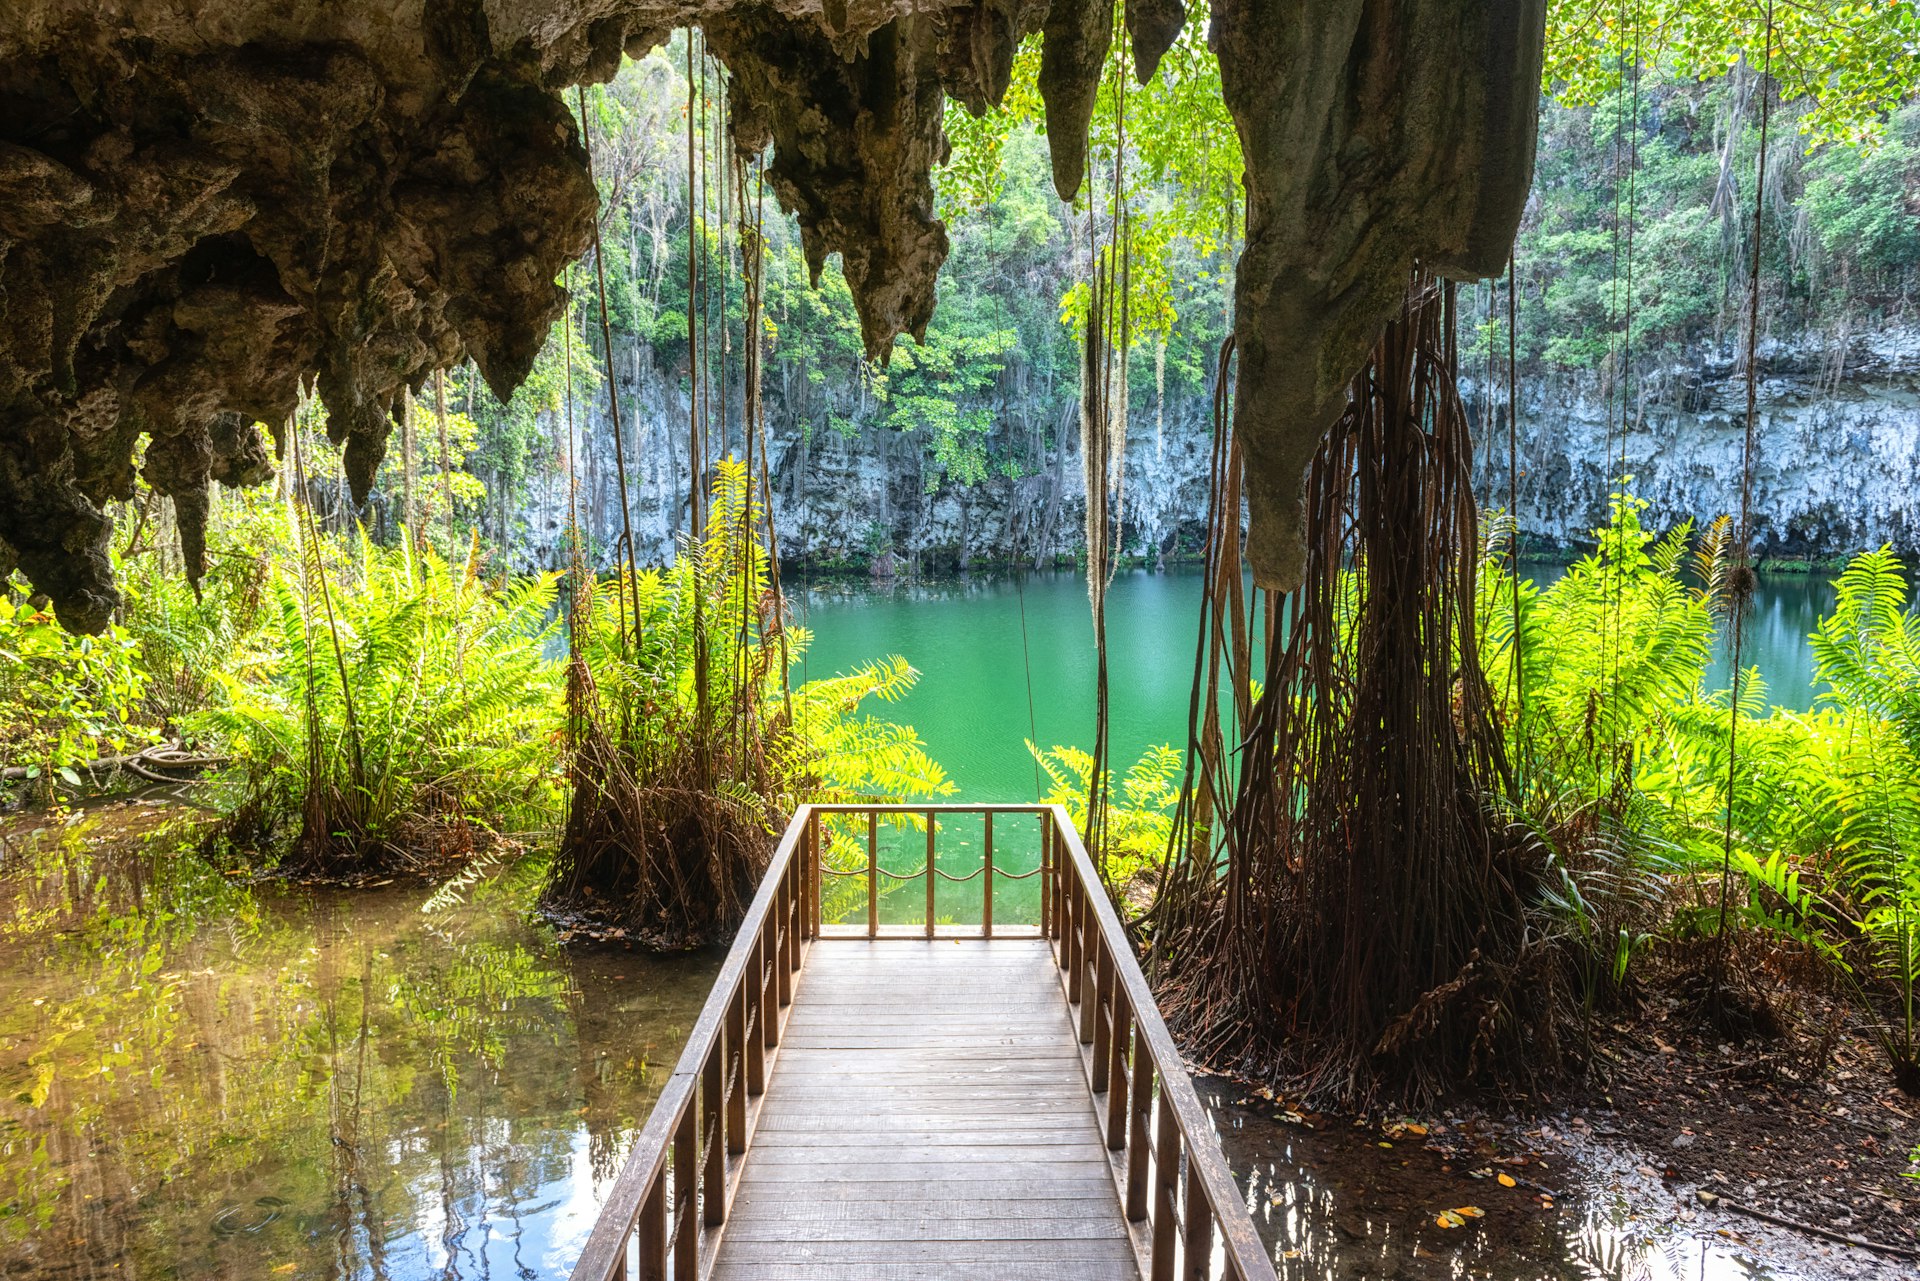 Une promenade dans la jungle mène à une pièce d'eau turquoise parmi des grottes calcaires